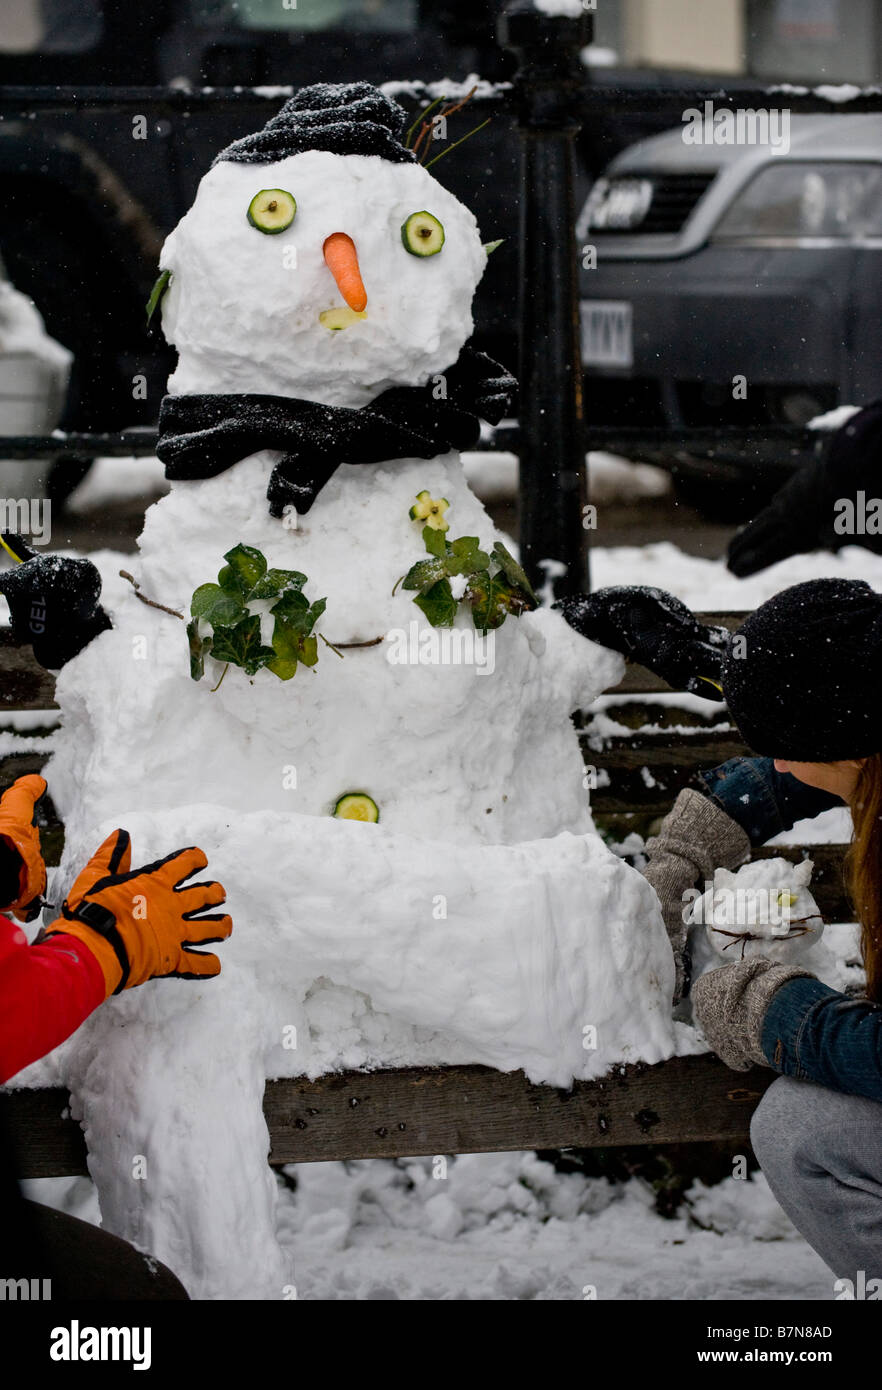 Letzten Schliff auf einem Schneemann und Snowcat sitzt auf einer Parkbank Stockfoto